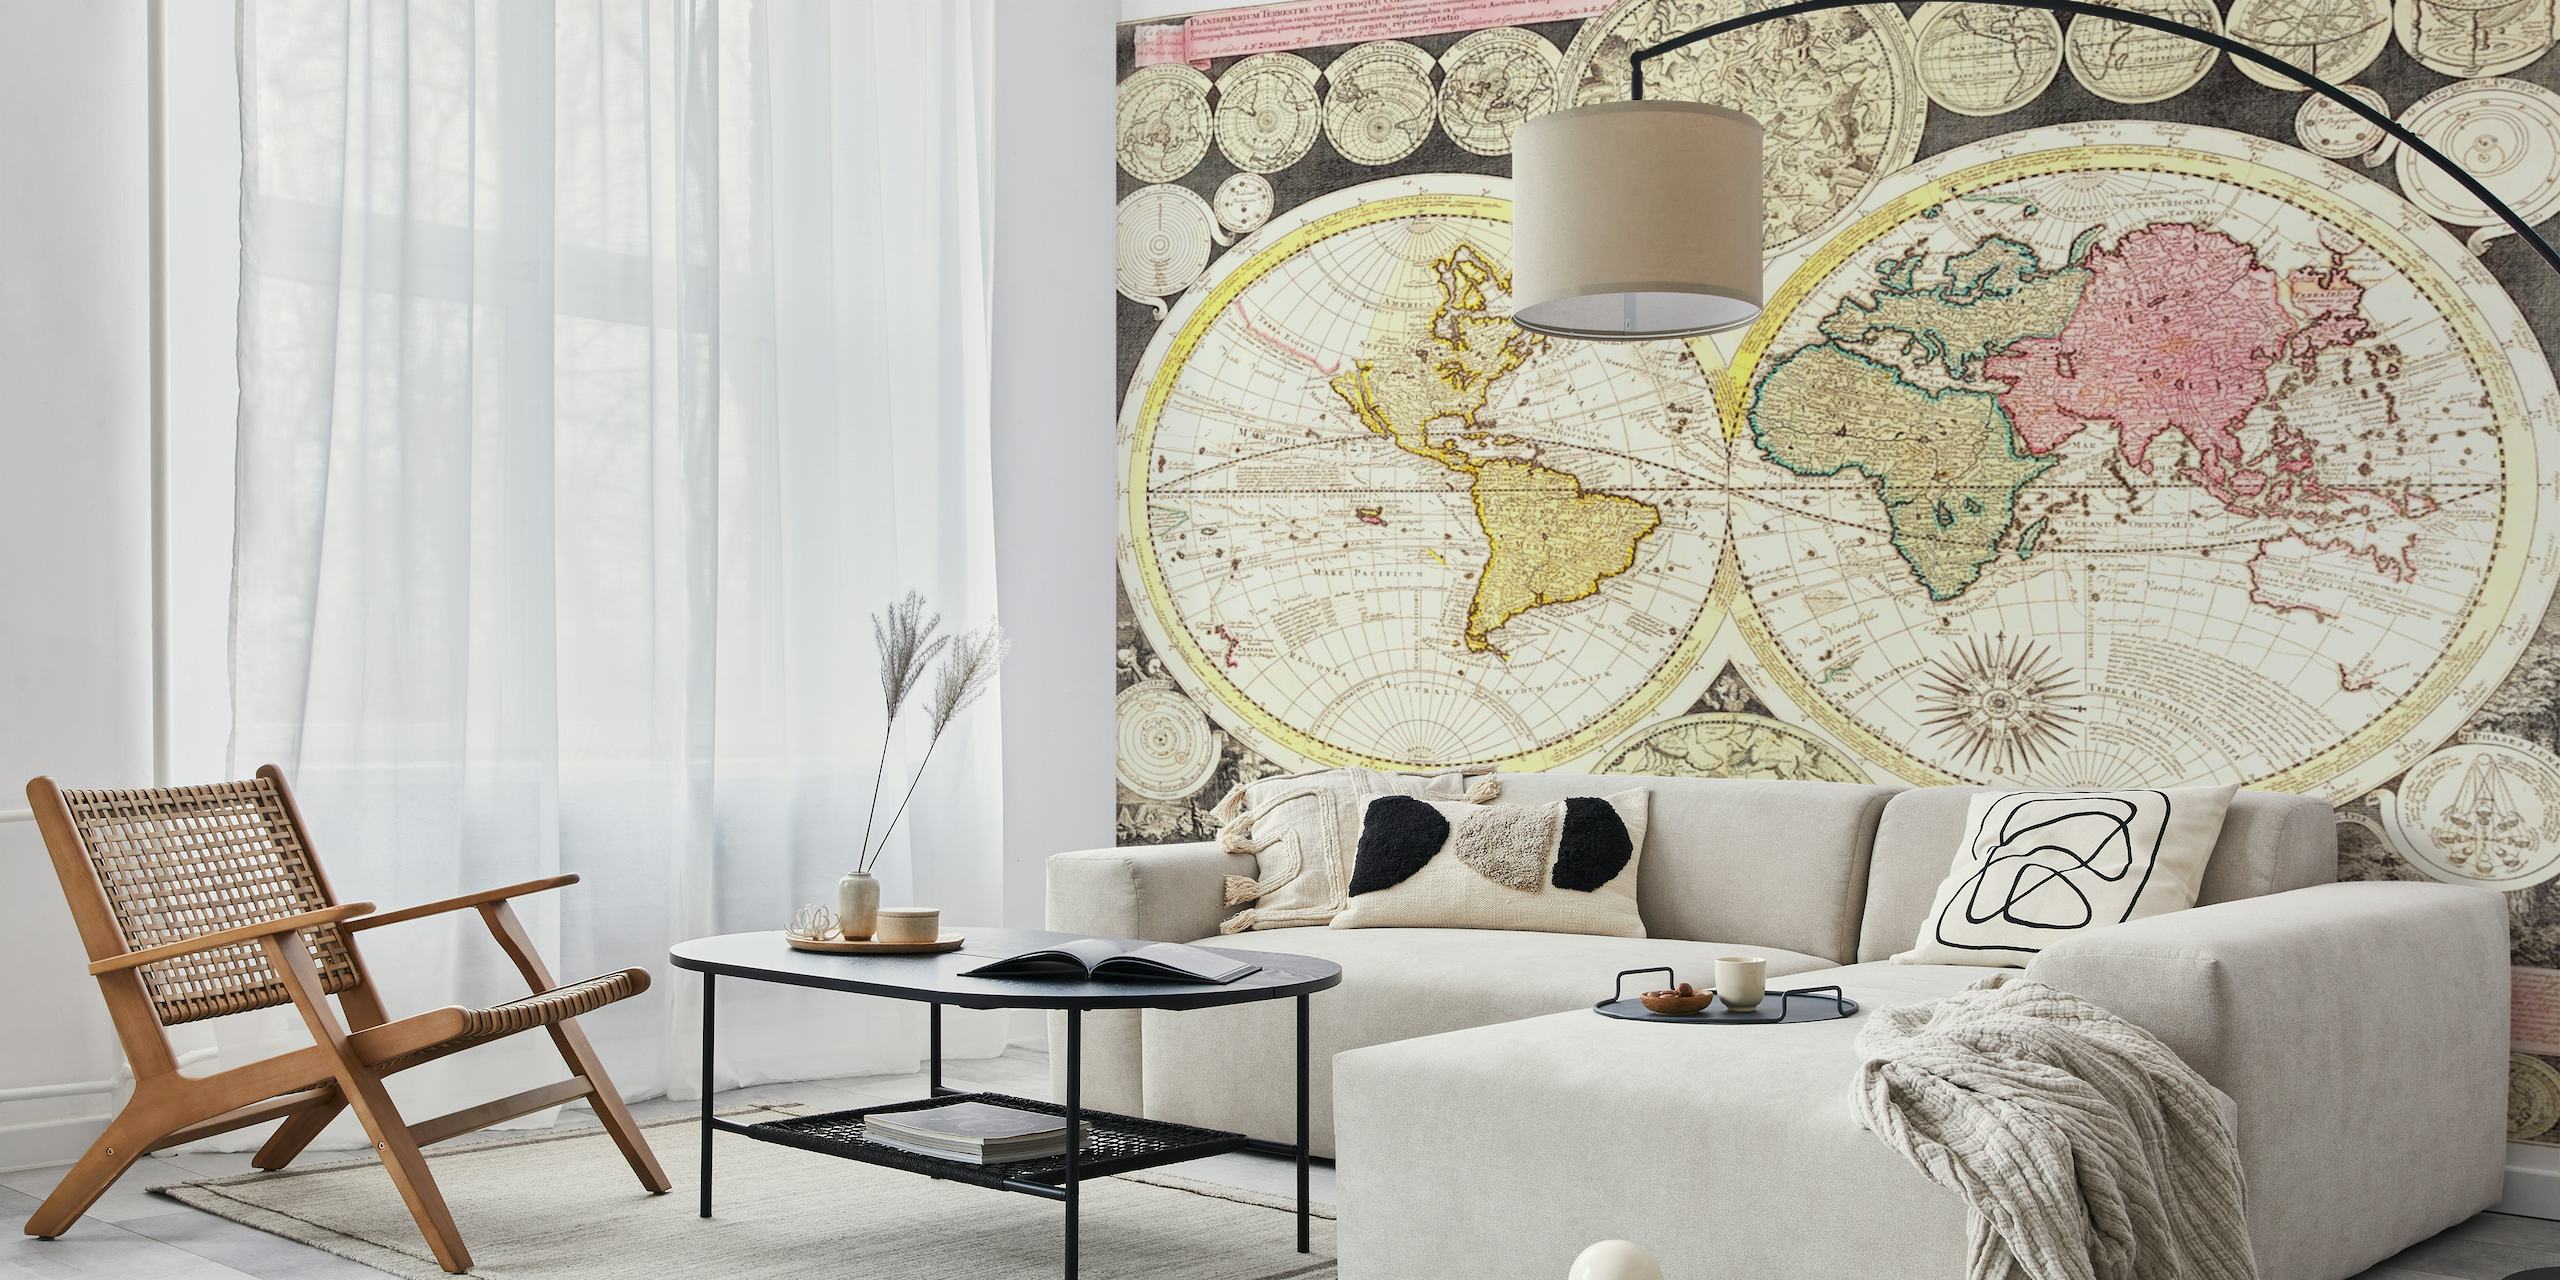 Fotomural vinílico de parede de mapa mundial antigo de dois hemisférios com cores vintage e detalhes decorativos de borda